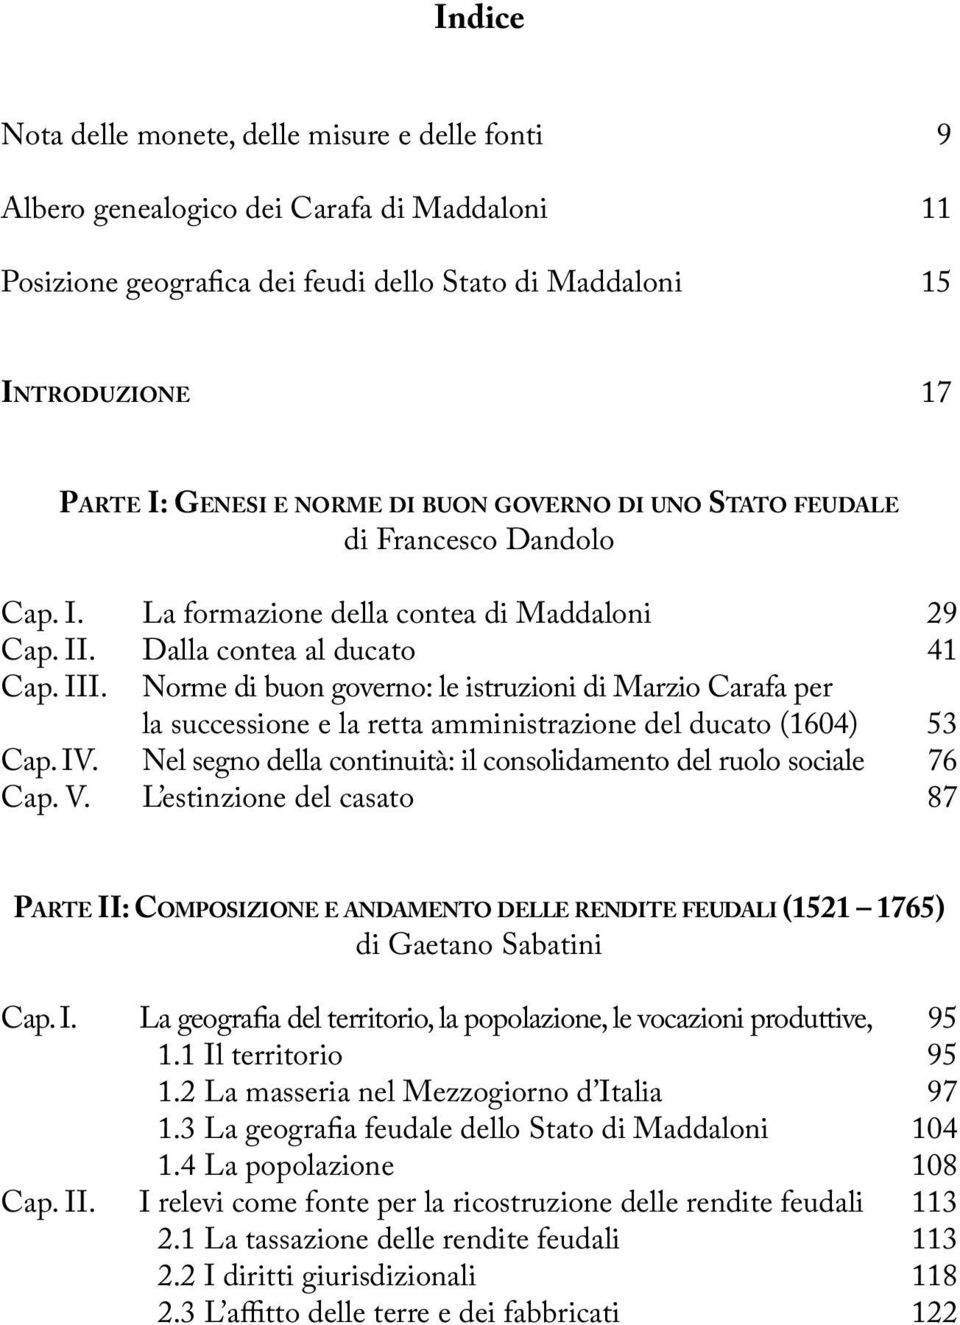 Norme di buon governo: le istruzioni di Marzio Carafa per la successione e la retta amministrazione del ducato (1604) 53 Cap. IV.